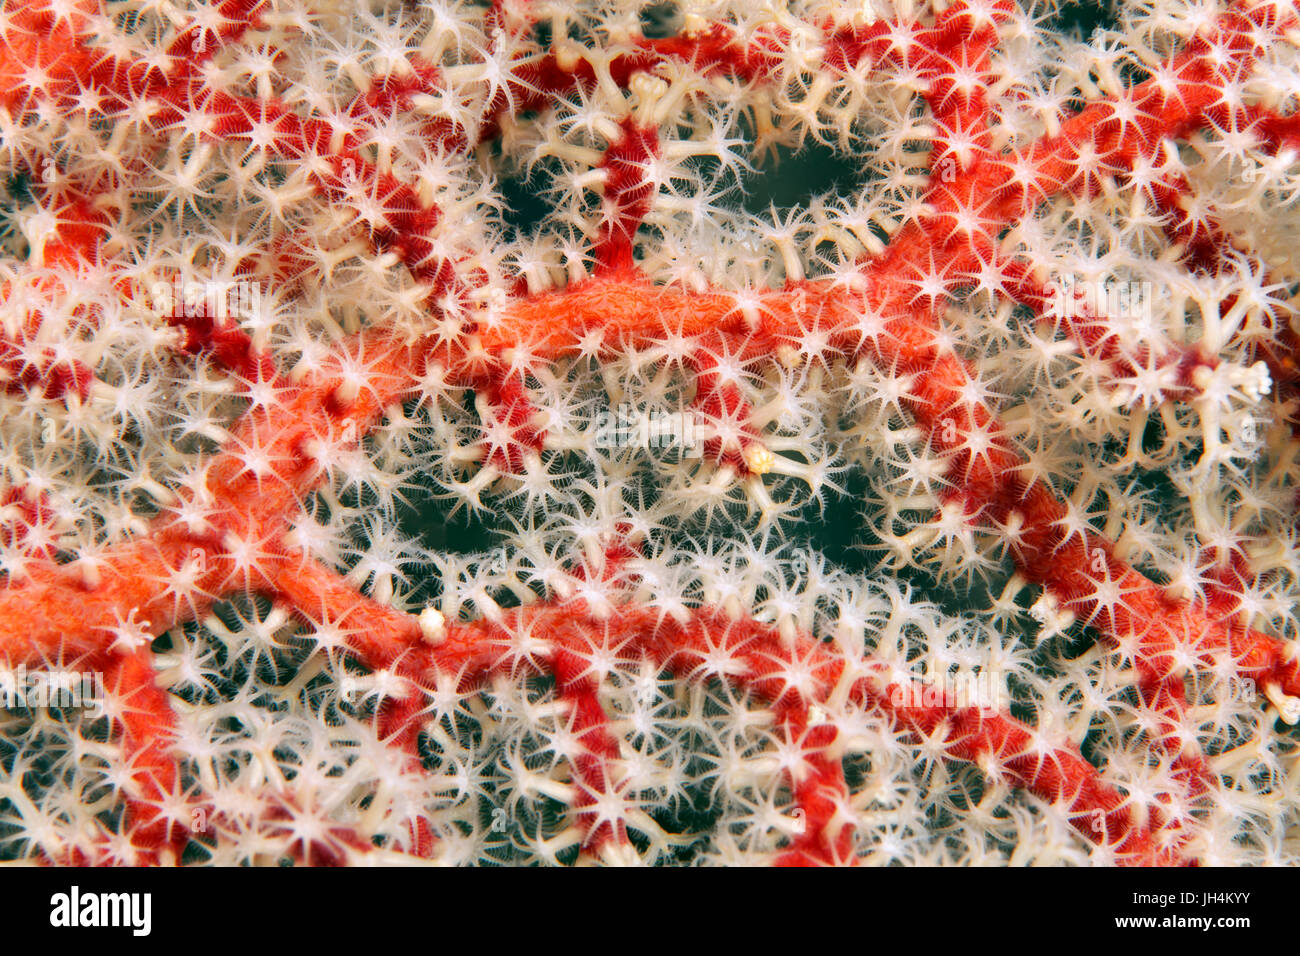 Dettaglio del corno corallo (Acantogorgia sp.), rosso, con polipi, bianco, Palawan Mimaropa, lago di Sulu, Oceano Pacifico, Filippine Foto Stock